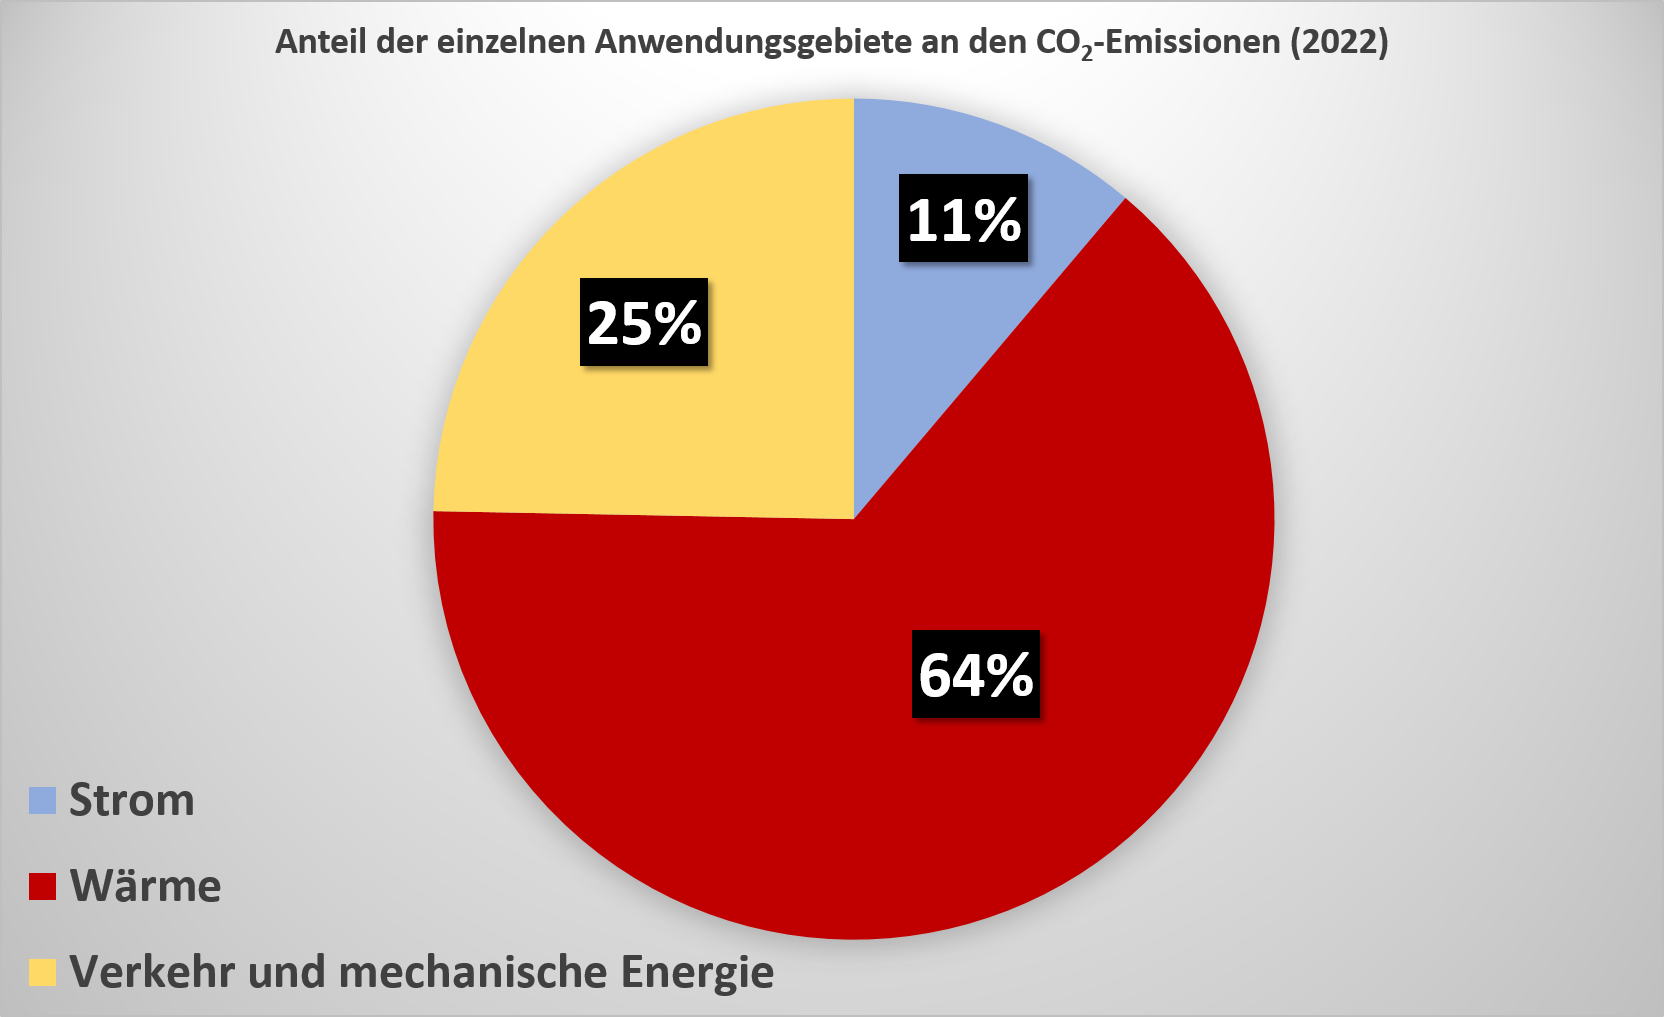 Abb. 1: Anteil der einzelnen Anwendungsgebiete (Strom, Wärme, Verkehr und mechanische Energie) an den CO2-Emissionen der Stadt Cuxhaven im Jahr 2022